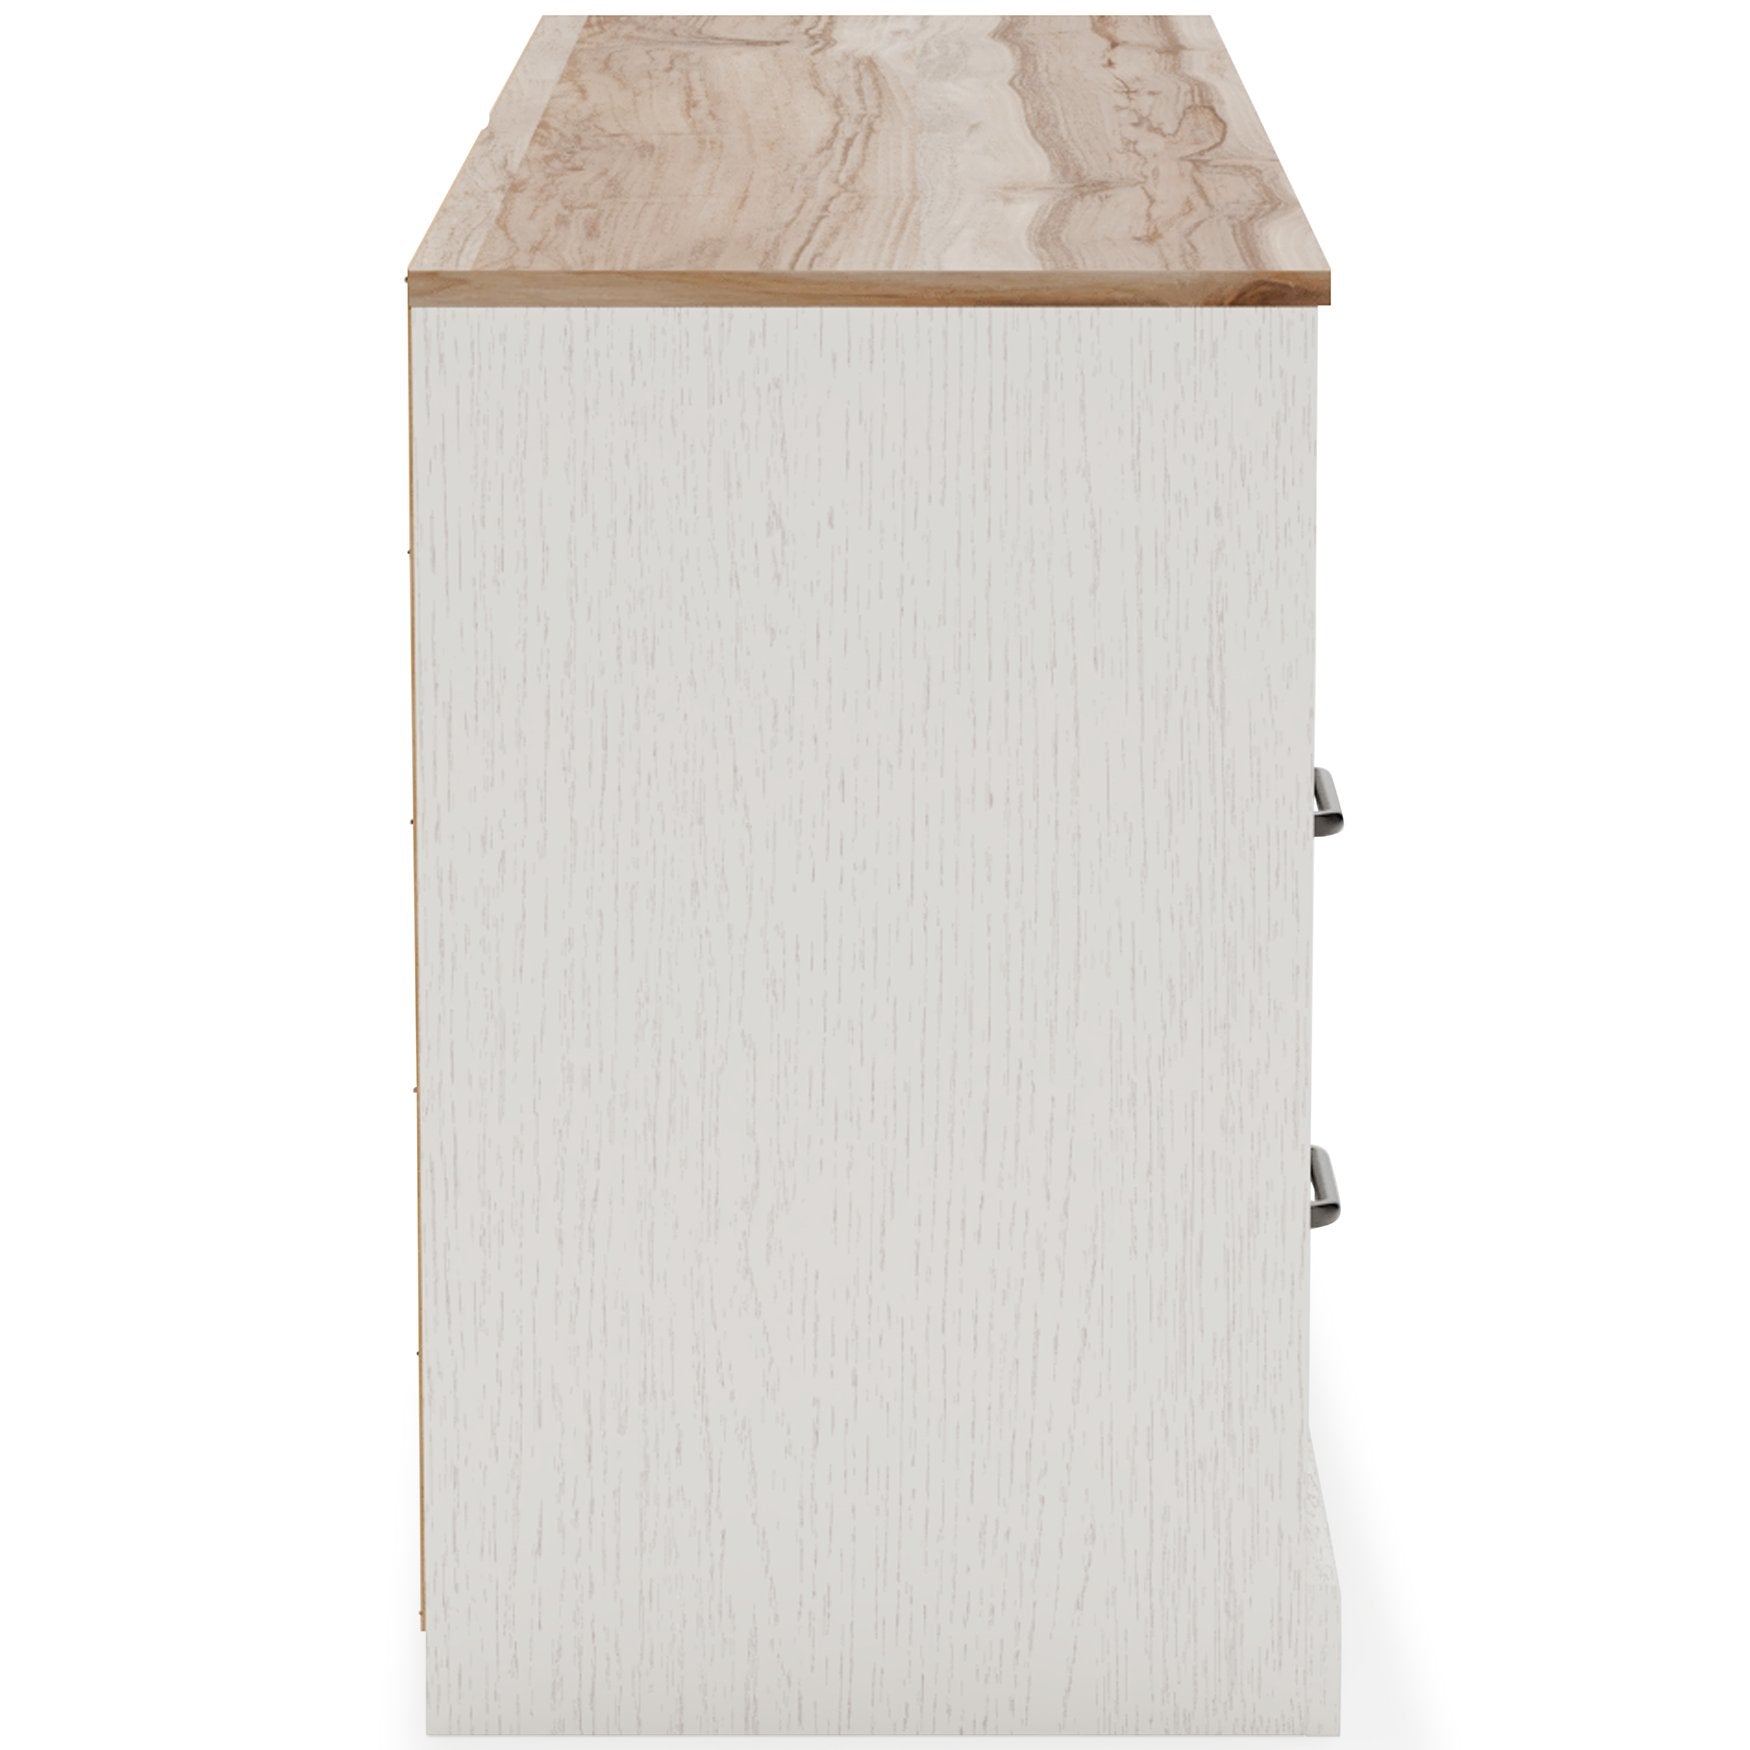 Vaibryn Dresser - Half Price Furniture